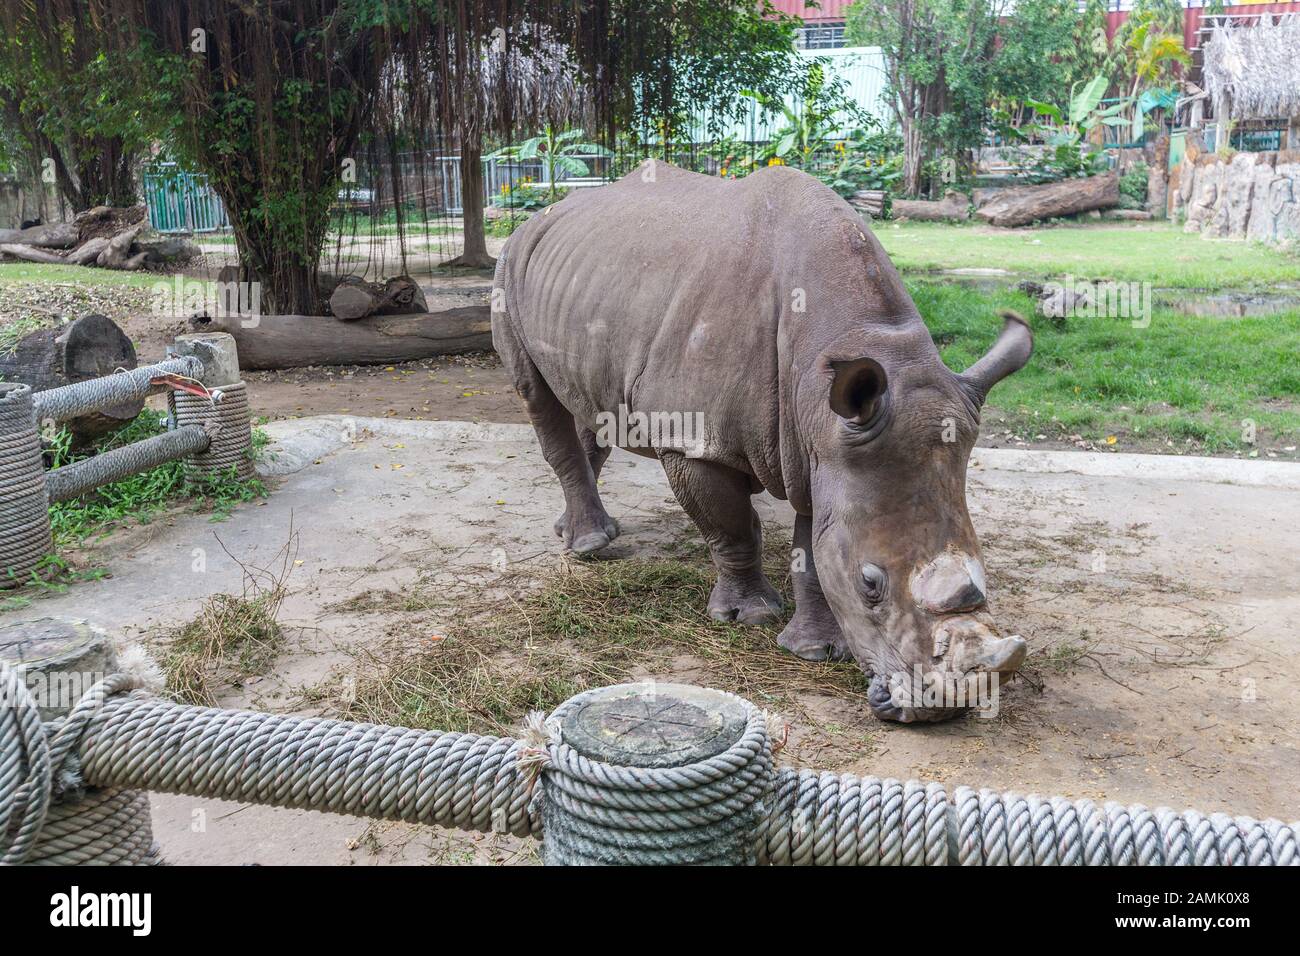 Rhino in the zoo Stock Photo